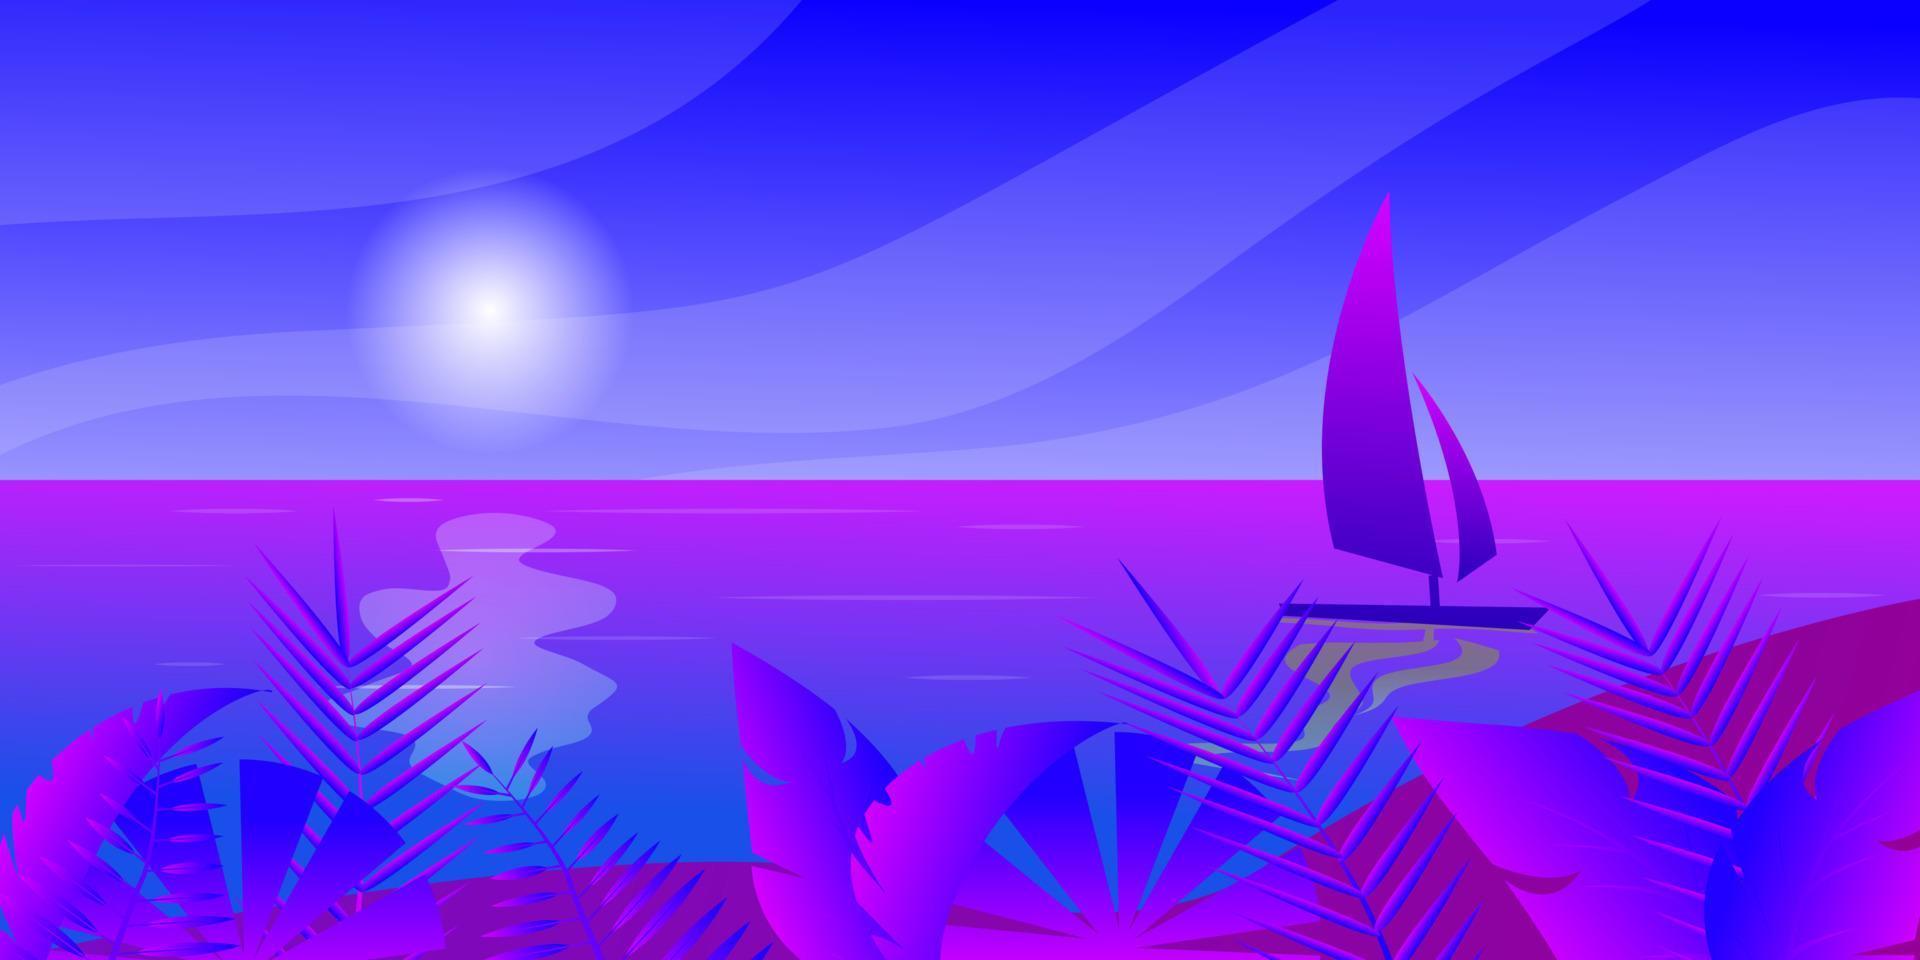 zeilboot in de zee, zon wolken tropisch eiland met strand en kokosnoot handpalmen, tropisch bladeren, vector illustratie voor reclame reizen toerisme cruises reizen agentschap kortingen en verkoop papier stijl.